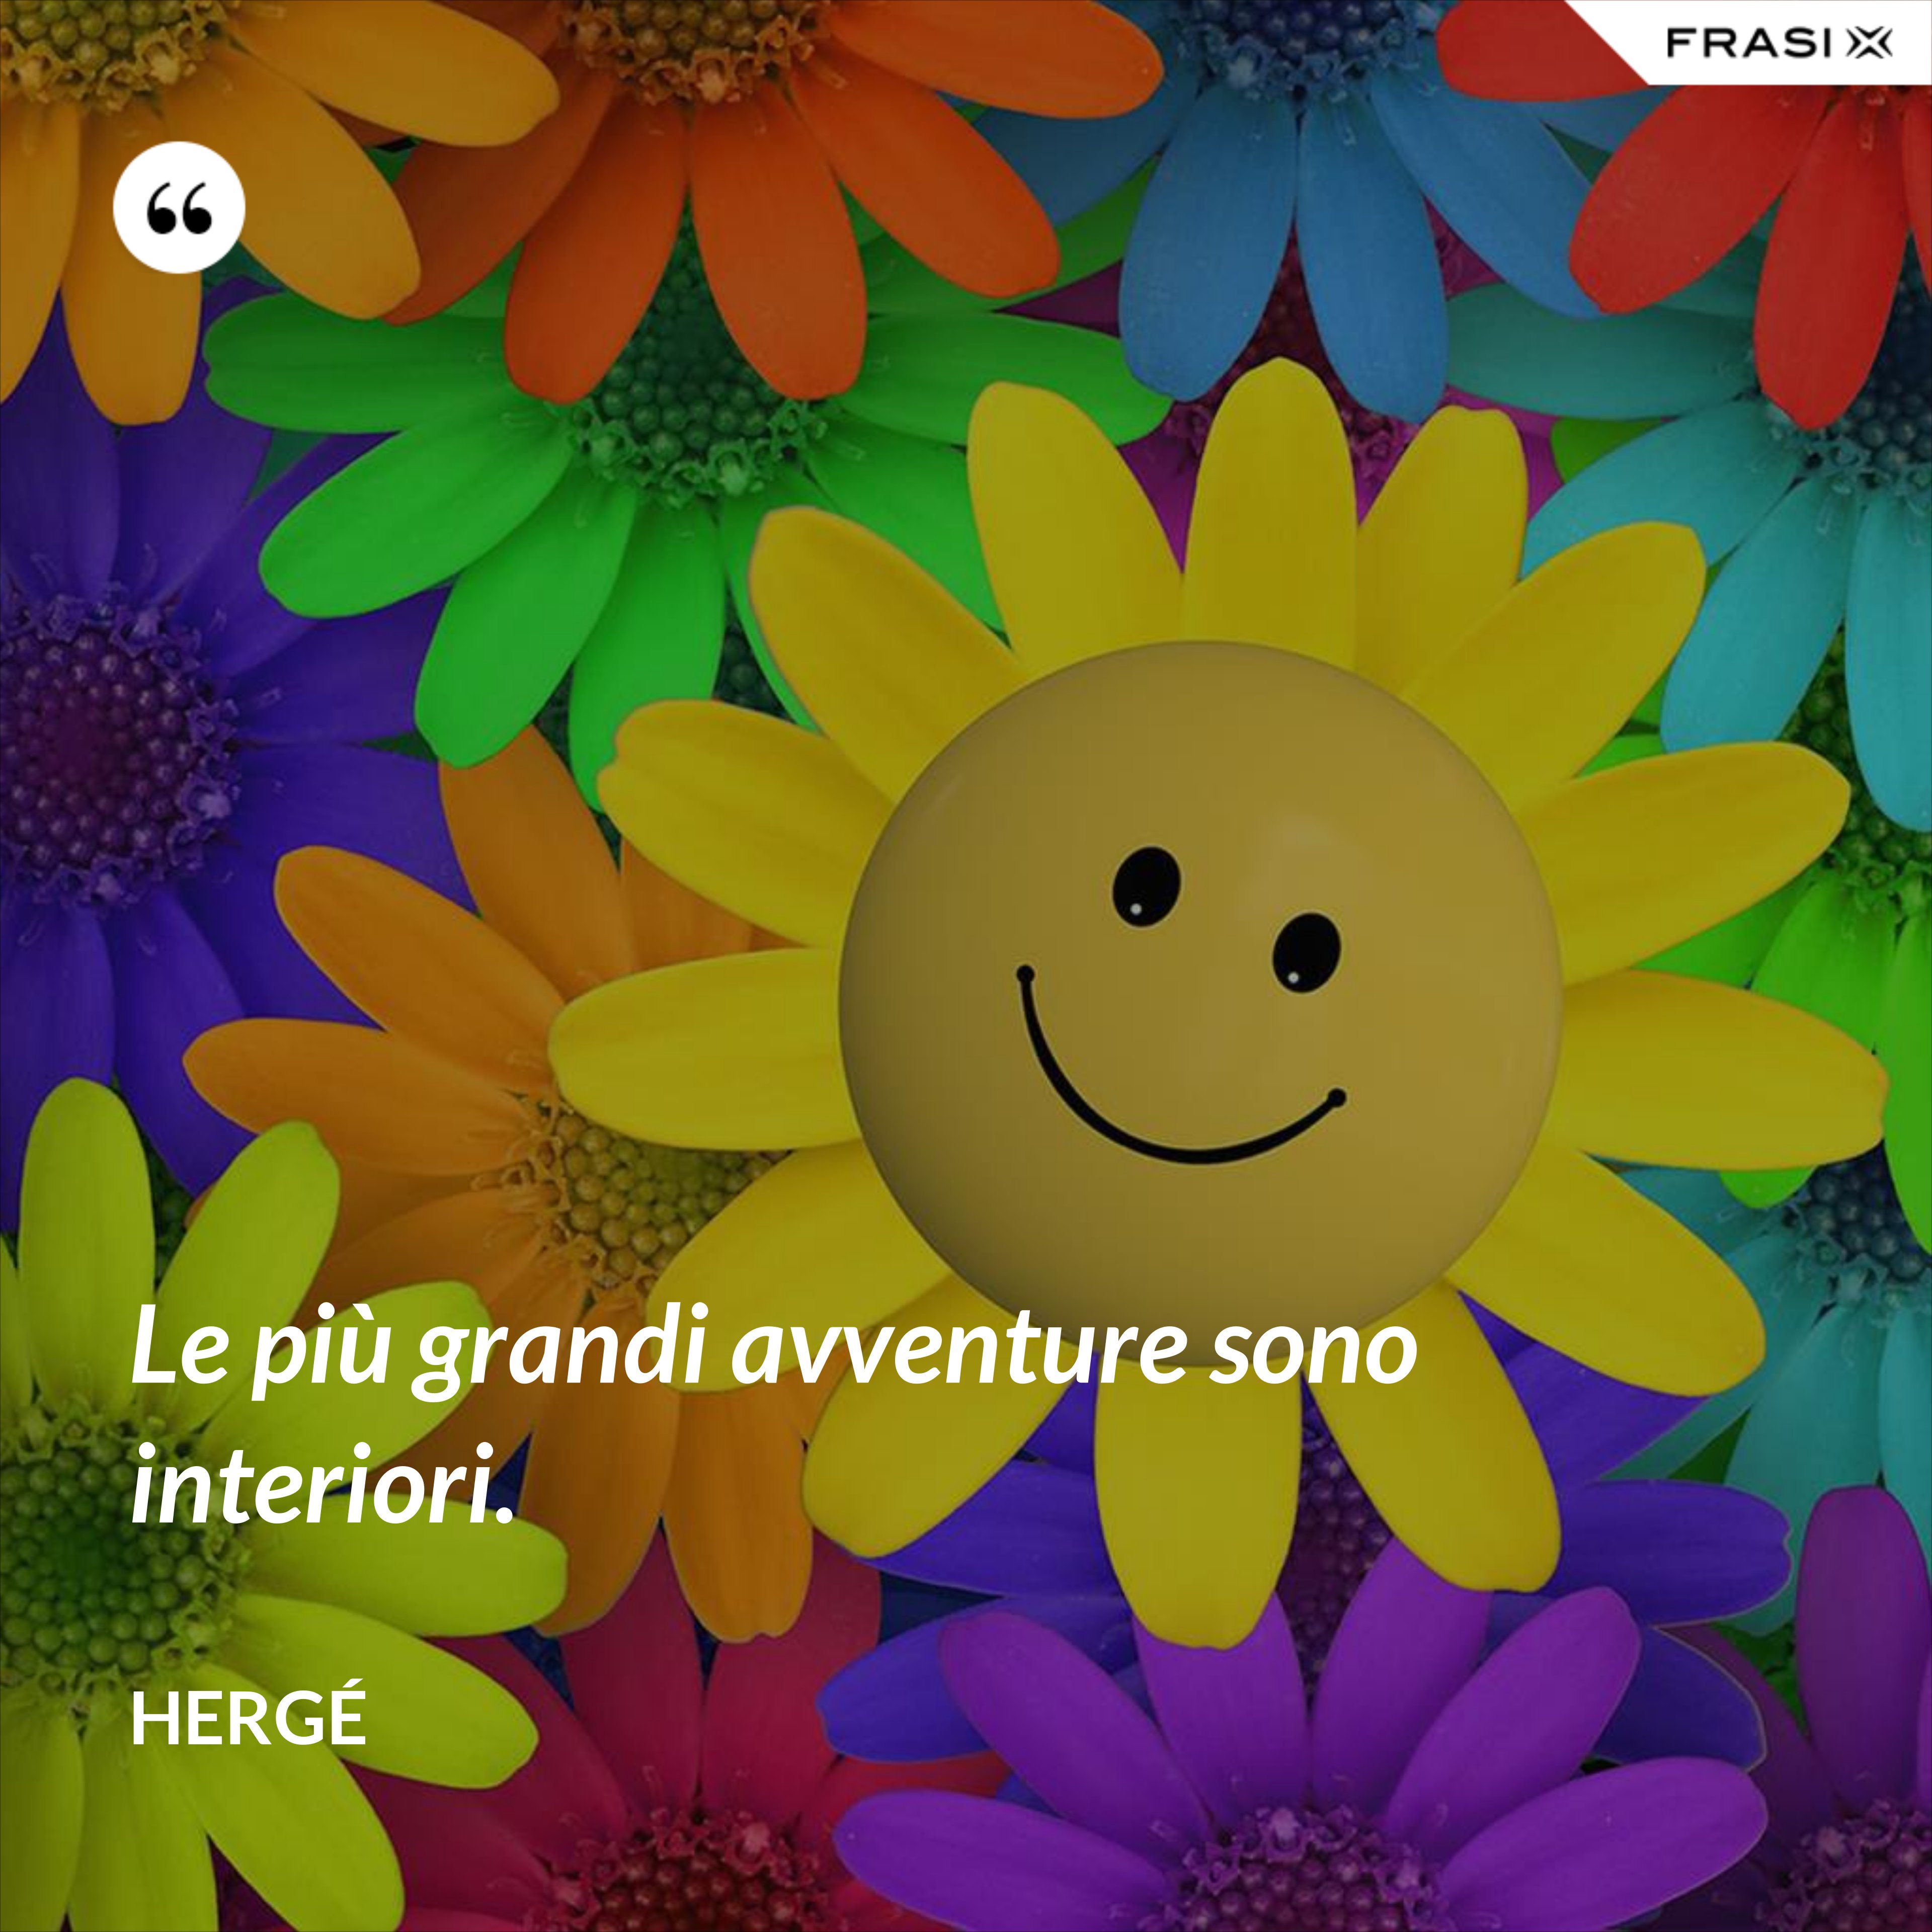 Le più grandi avventure sono interiori. - Hergé